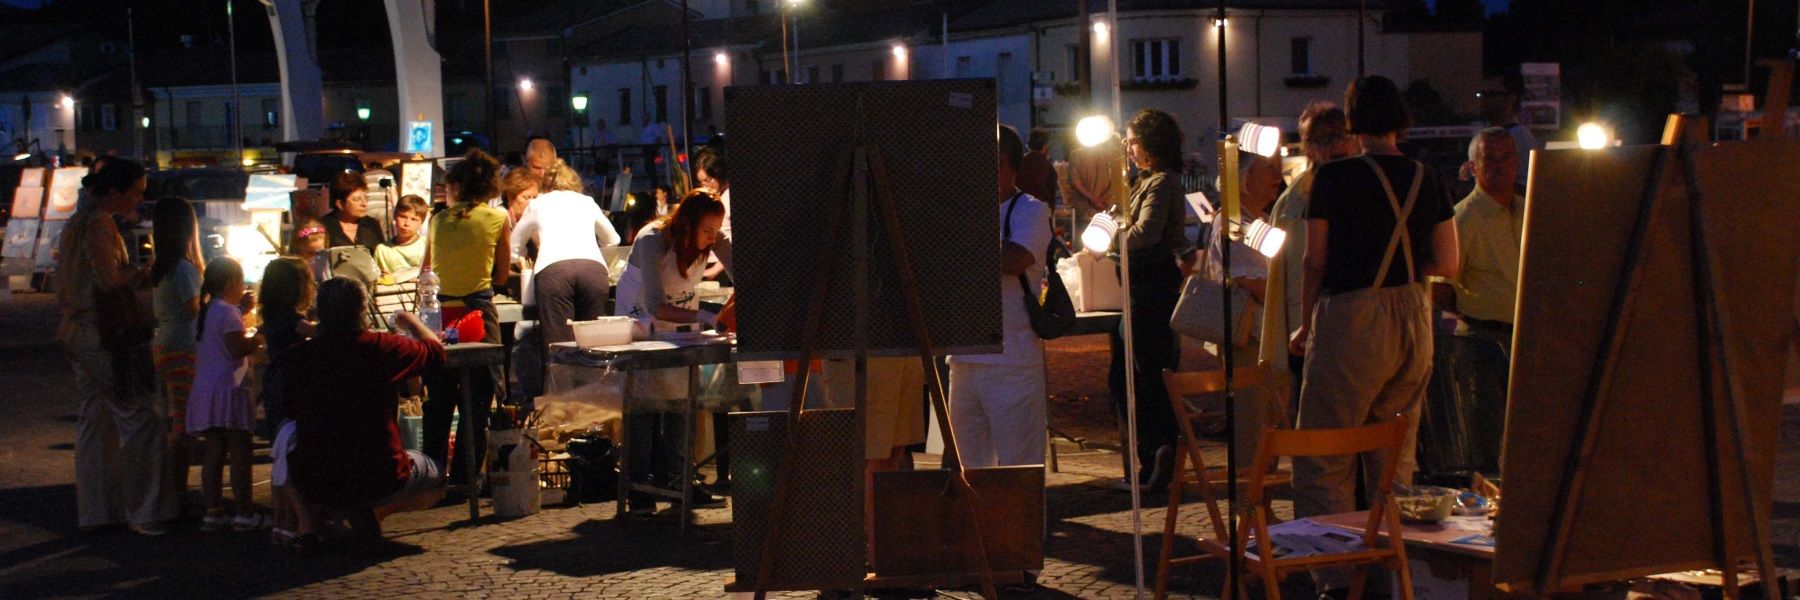 Arts Festival, live creations in Piazzale dei Salinari